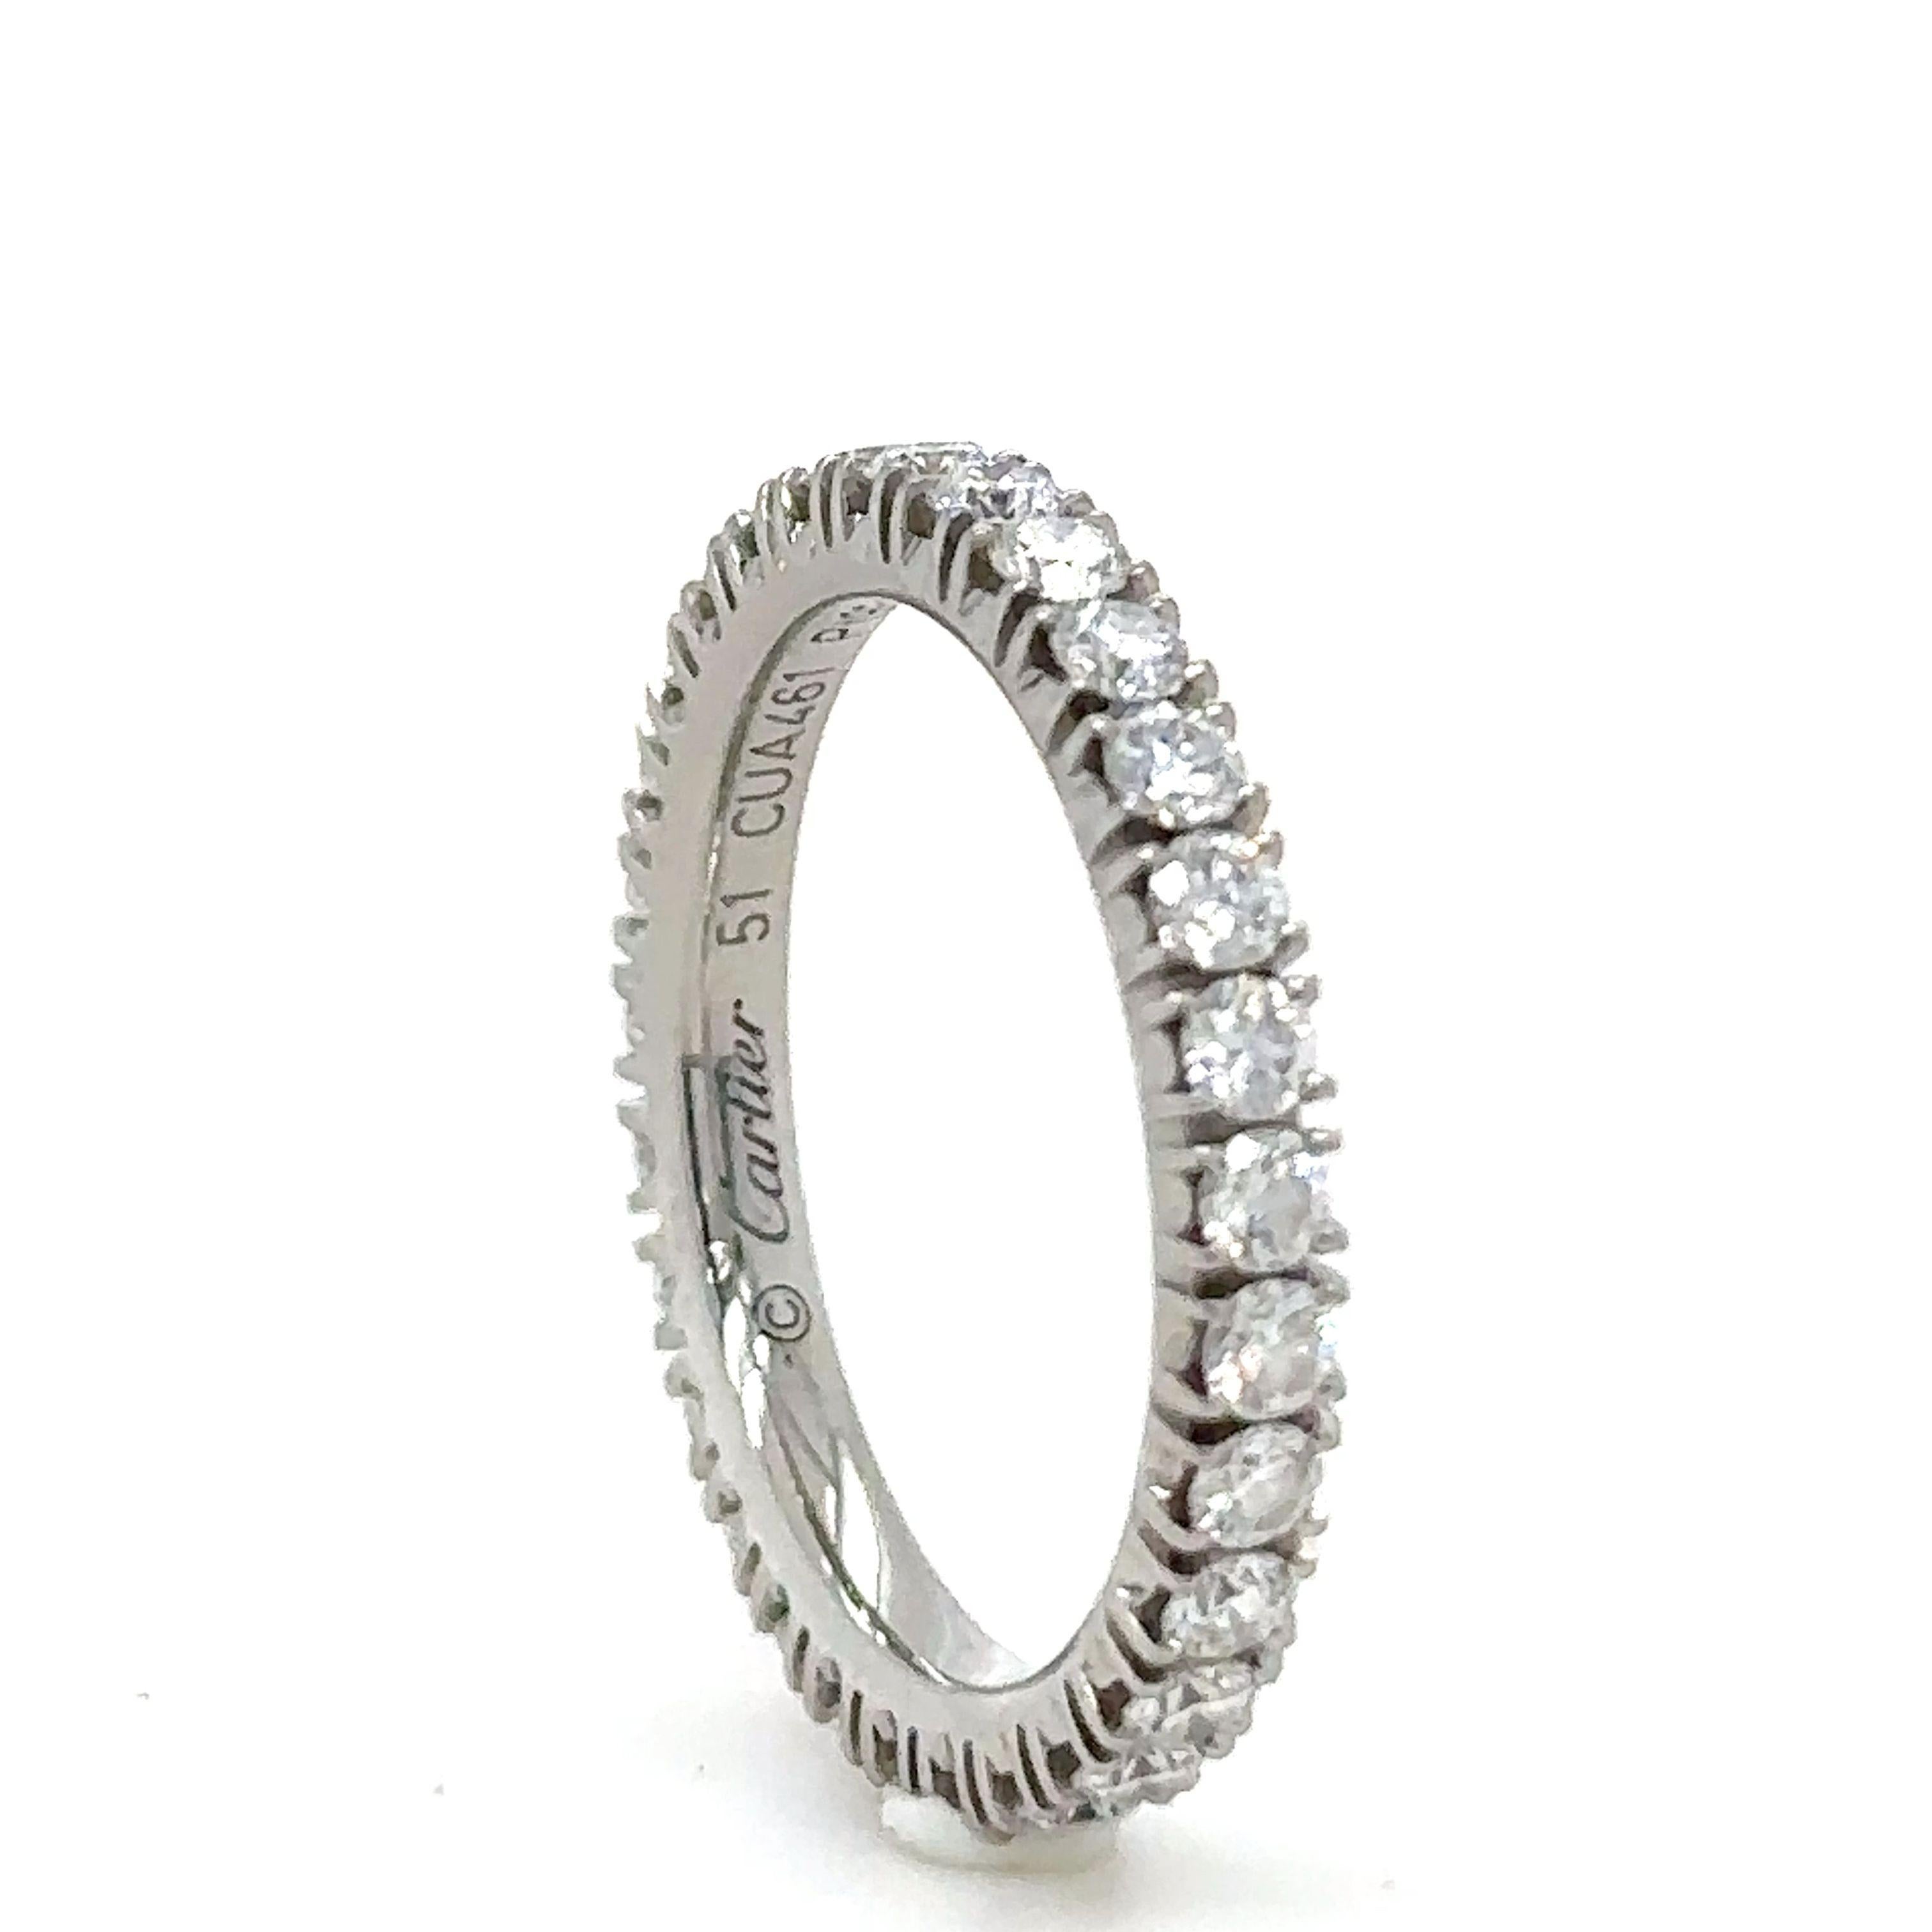 Ein Cartier Étincelle Diamond Full Circle Ehering mit 29 runden Diamanten im Brillantschliff, gefasst in Platin auf einem 2,6 mm breiten Band.

Diamanten 29 = 0,94ct

Metall: 950 Platin
Karat: 0,94ct
Farbe: N/A
Klarheit:  K.A.
Schliff: Runder